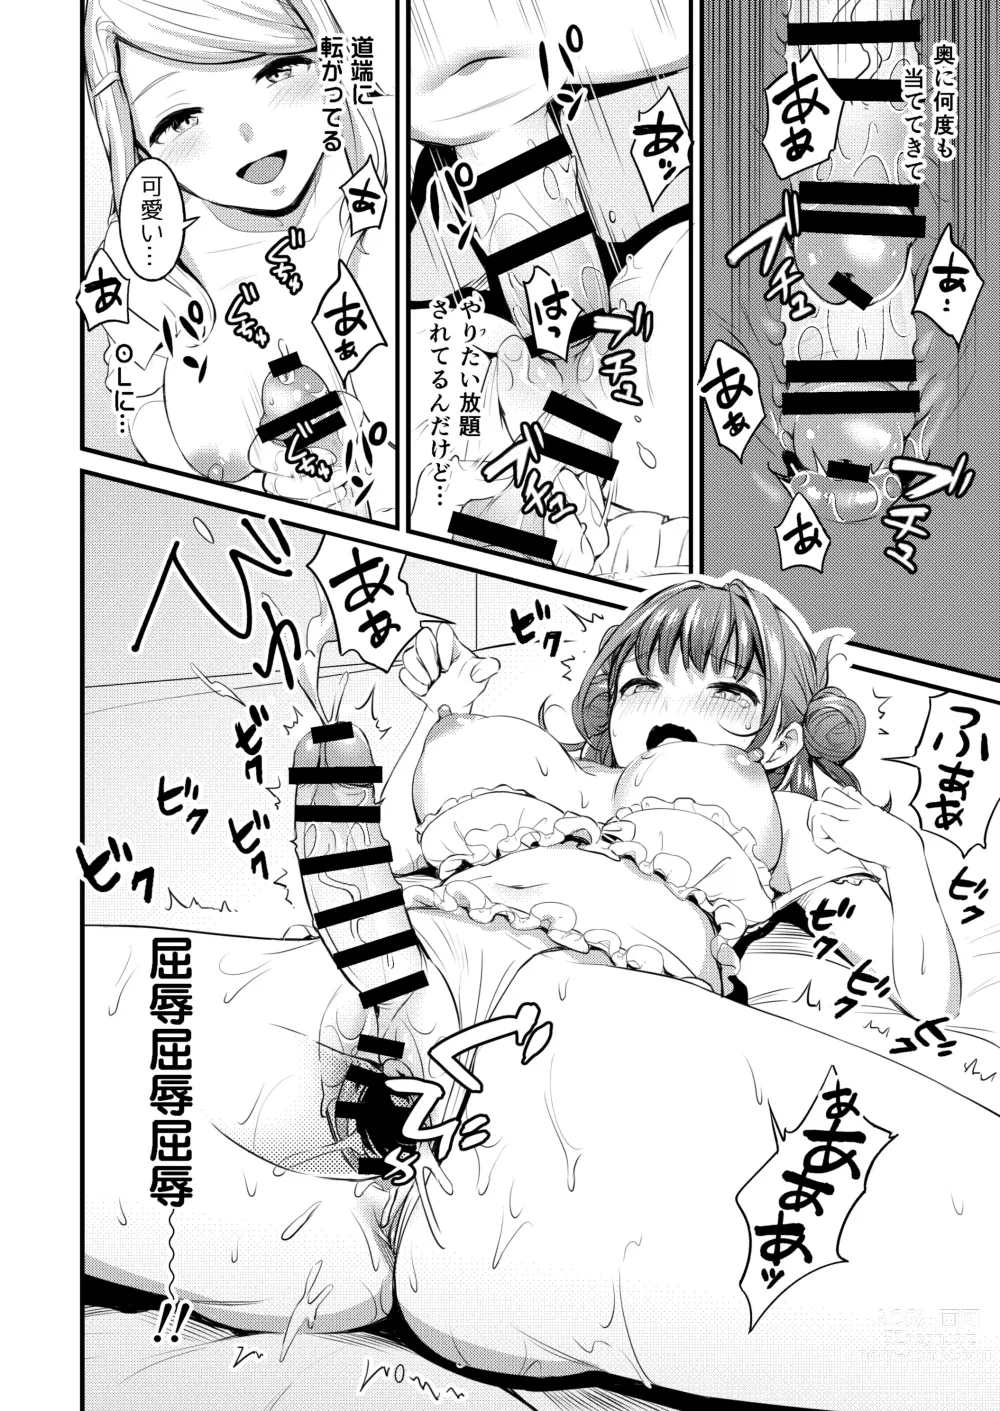 Page 12 of doujinshi Frill no Shita no Netsu